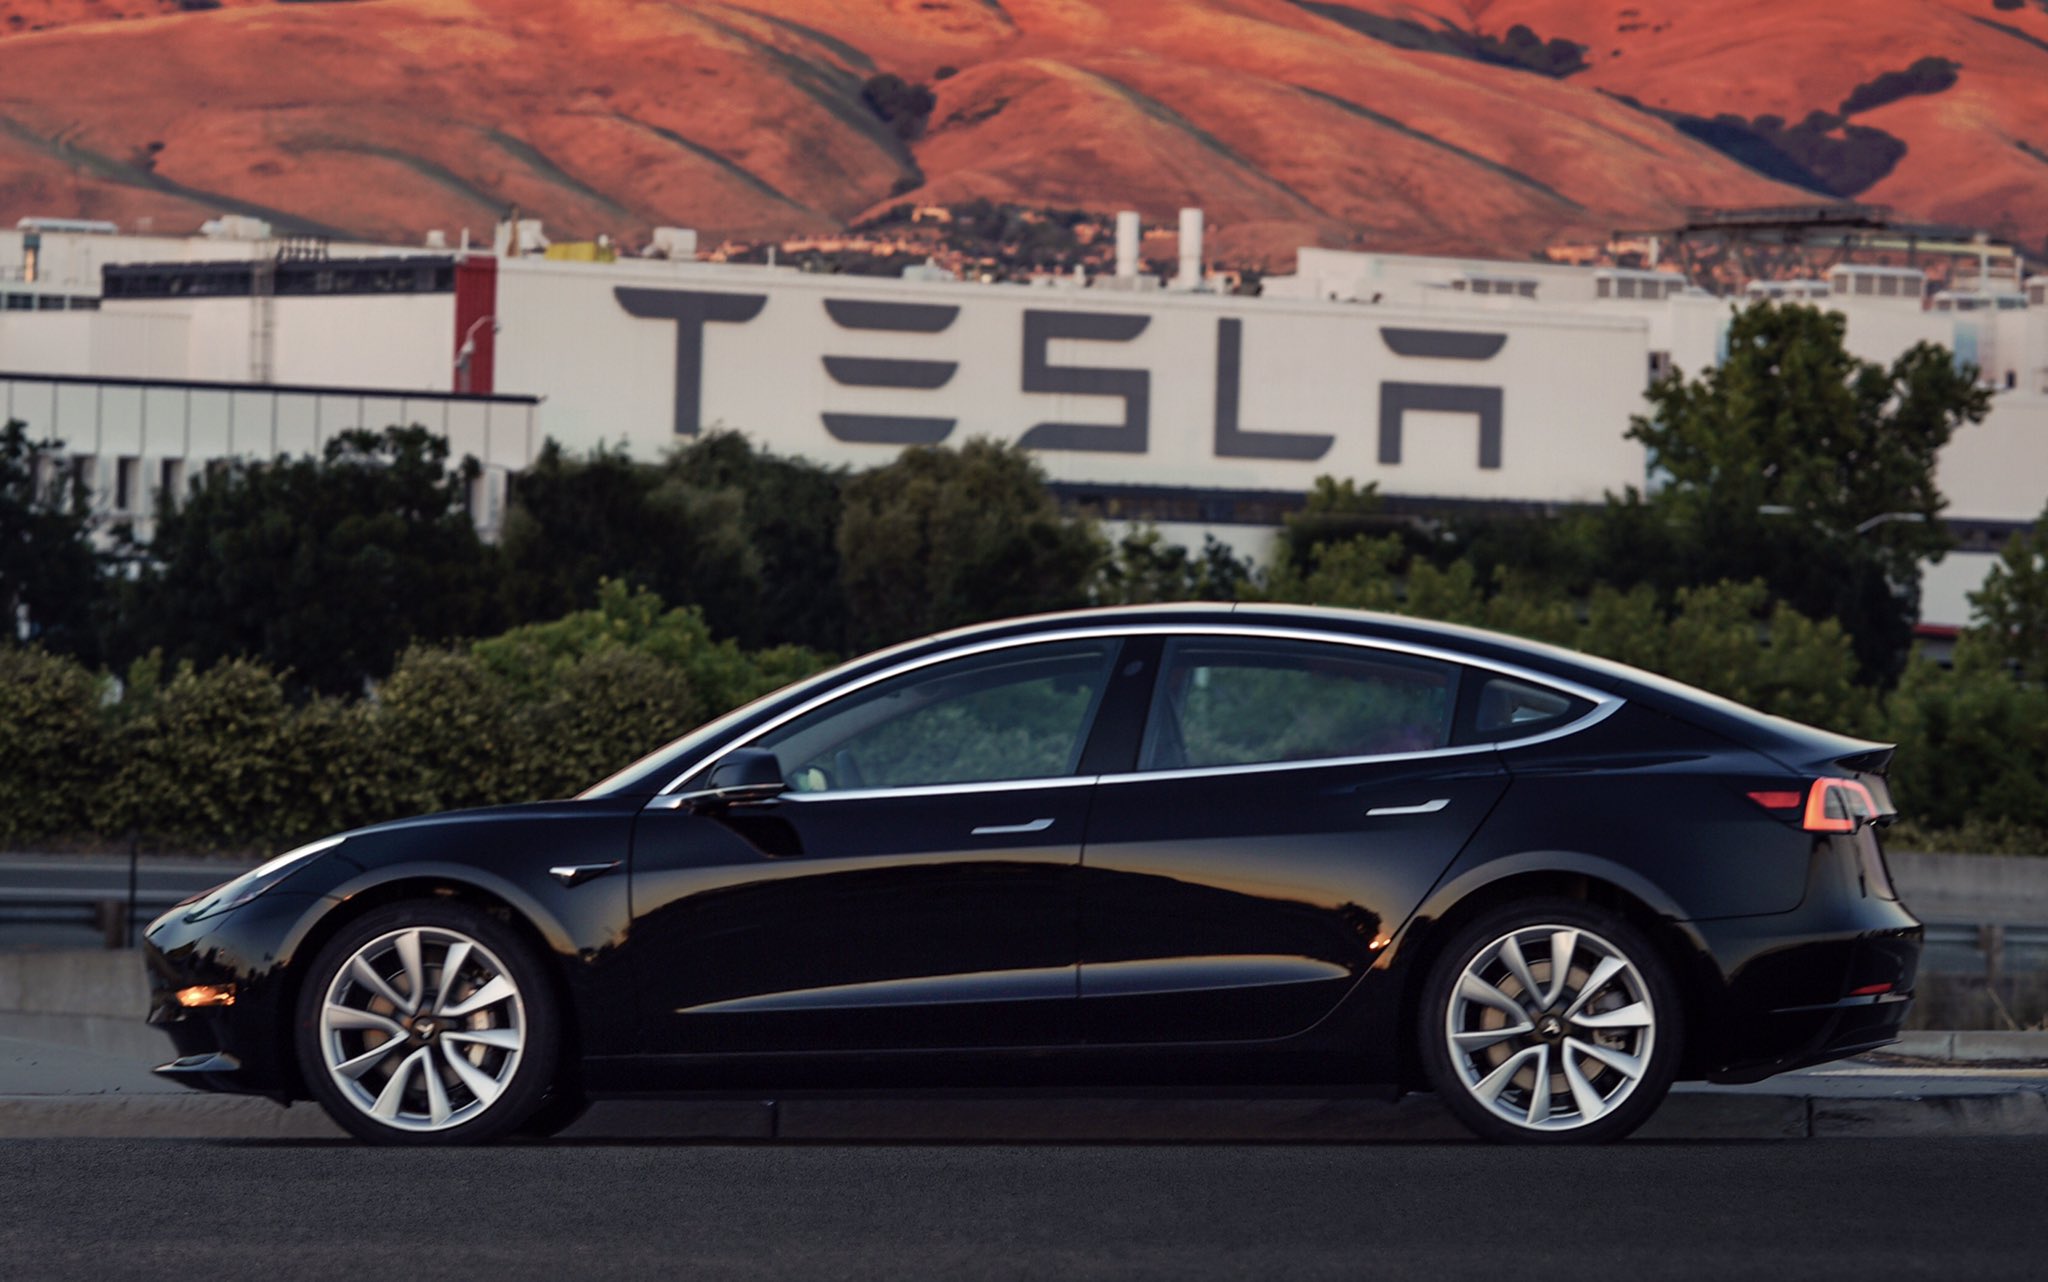 Model 3 by Tesla Motors. Photo by: Elon Musk / Twitter